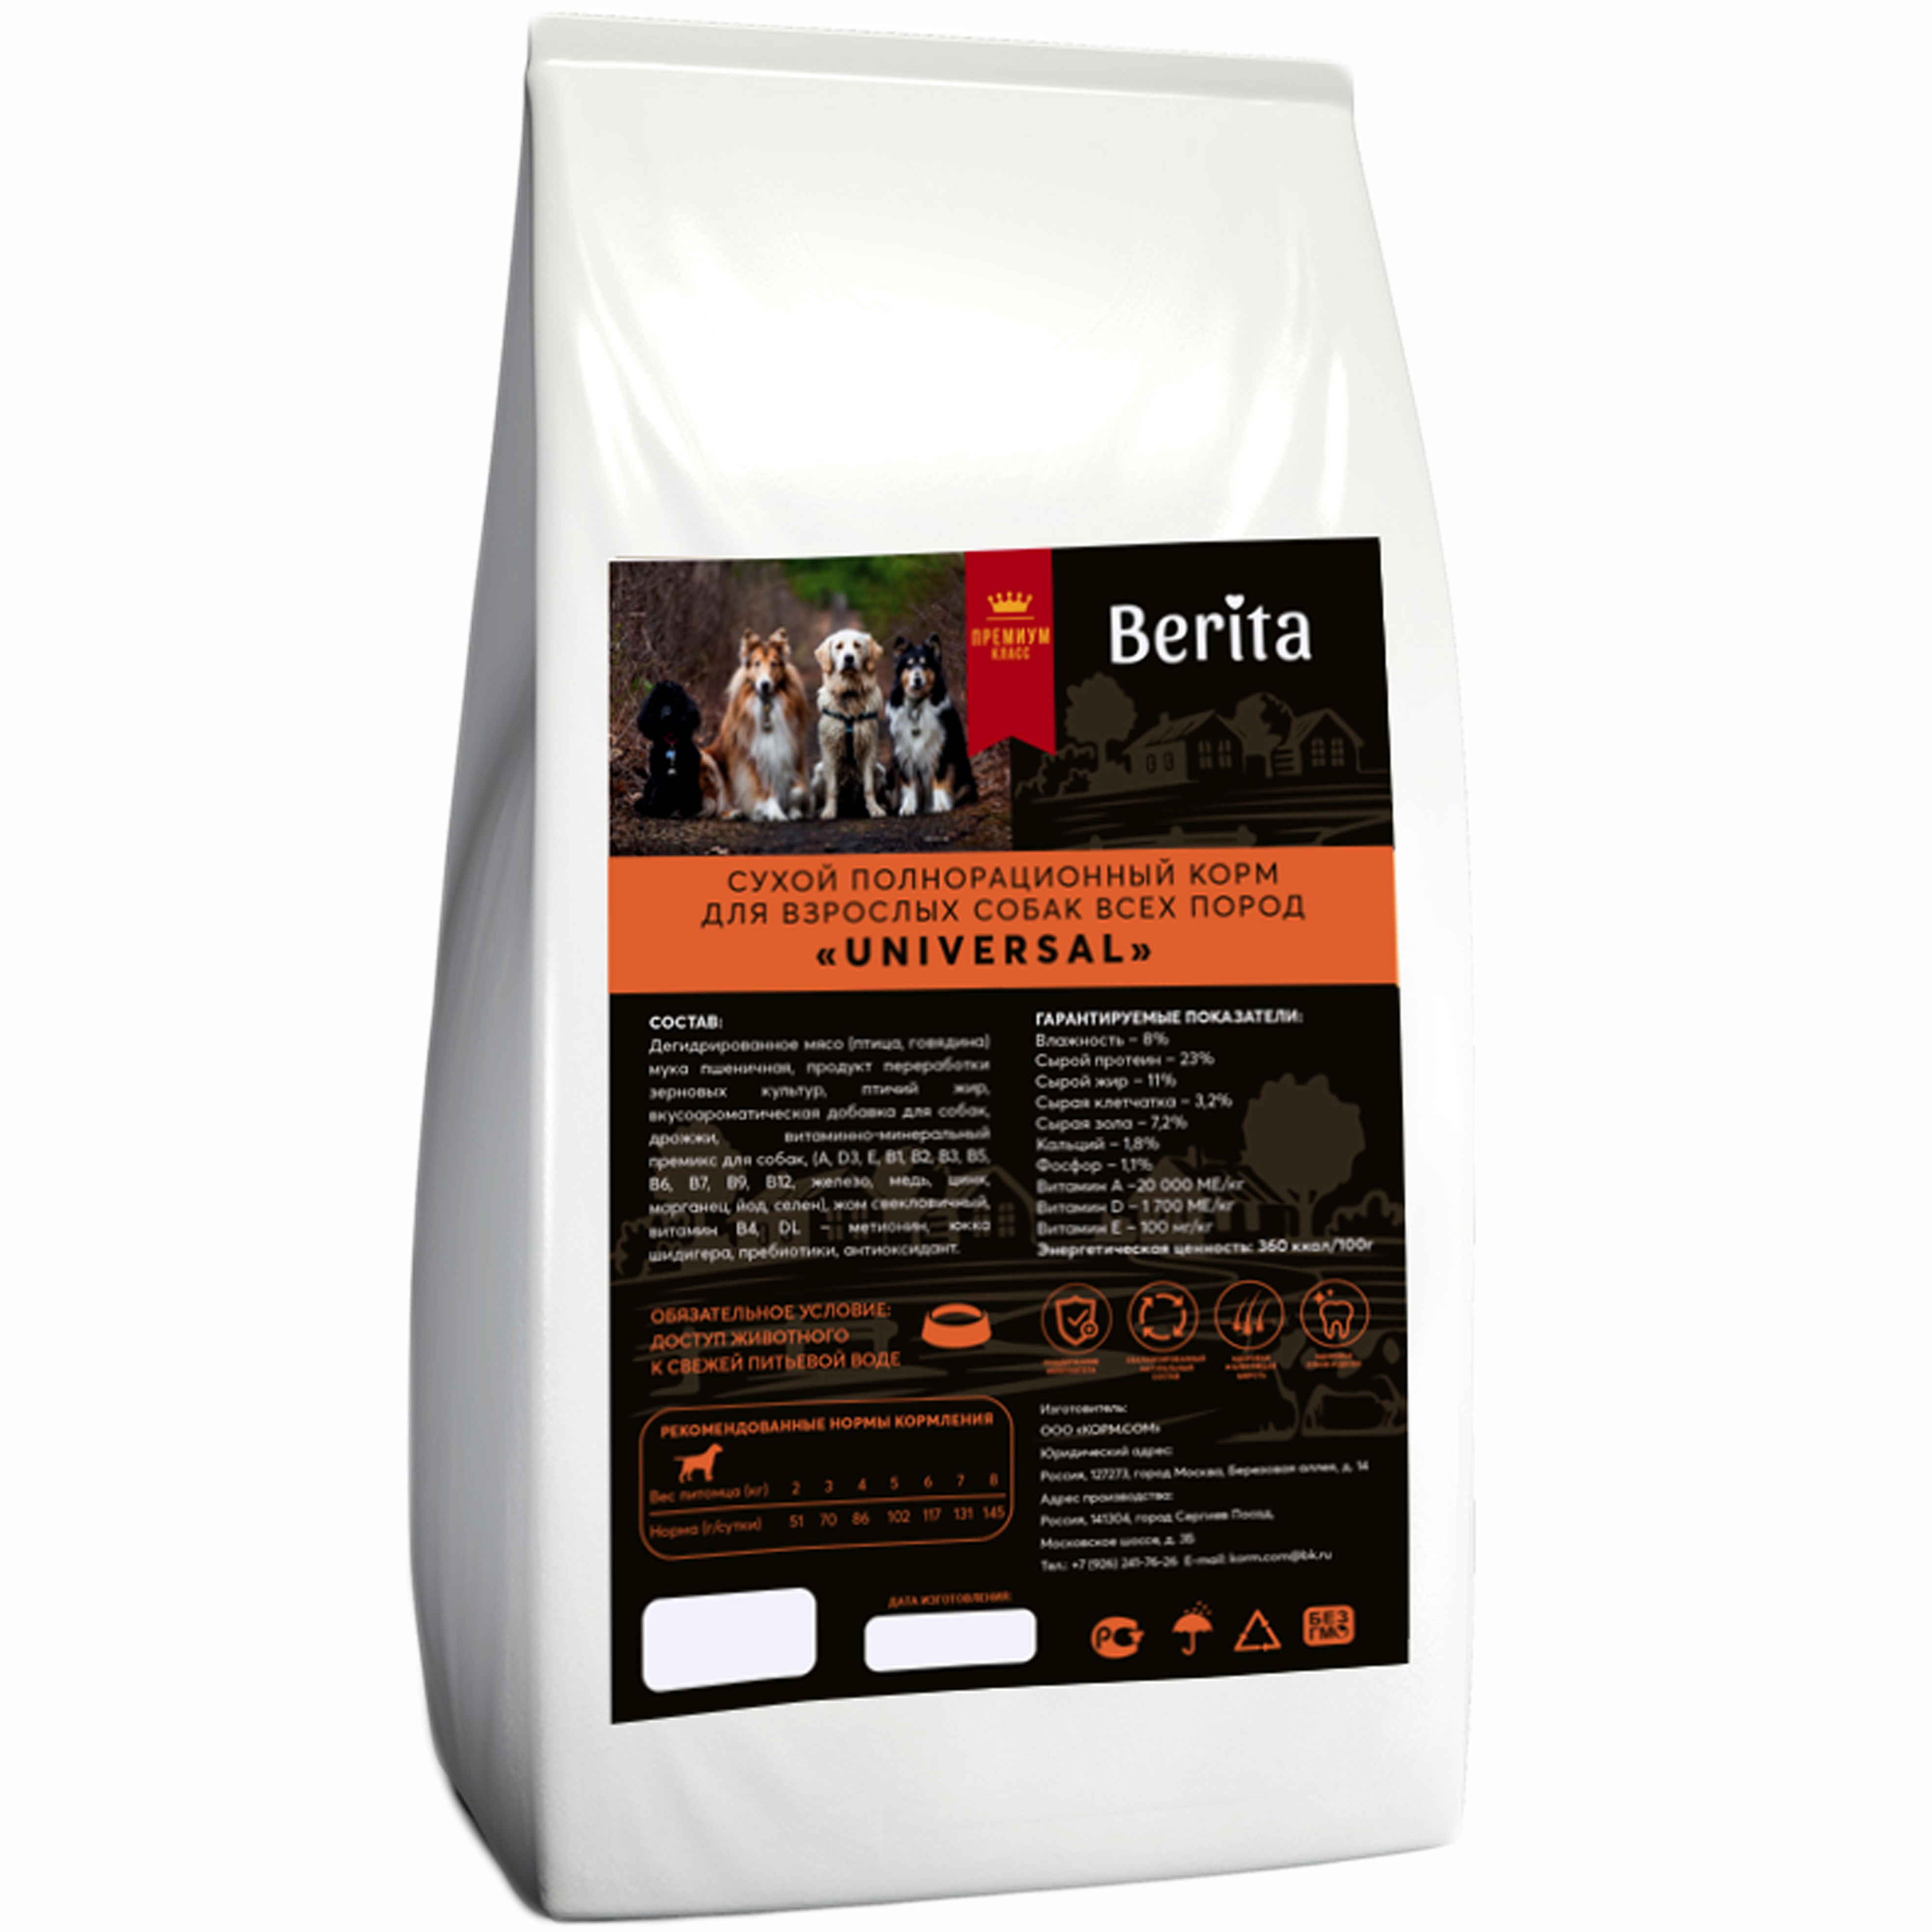 Сухой корм для собак BERITA Universal, для всех пород, говядина, птица, 10 кг